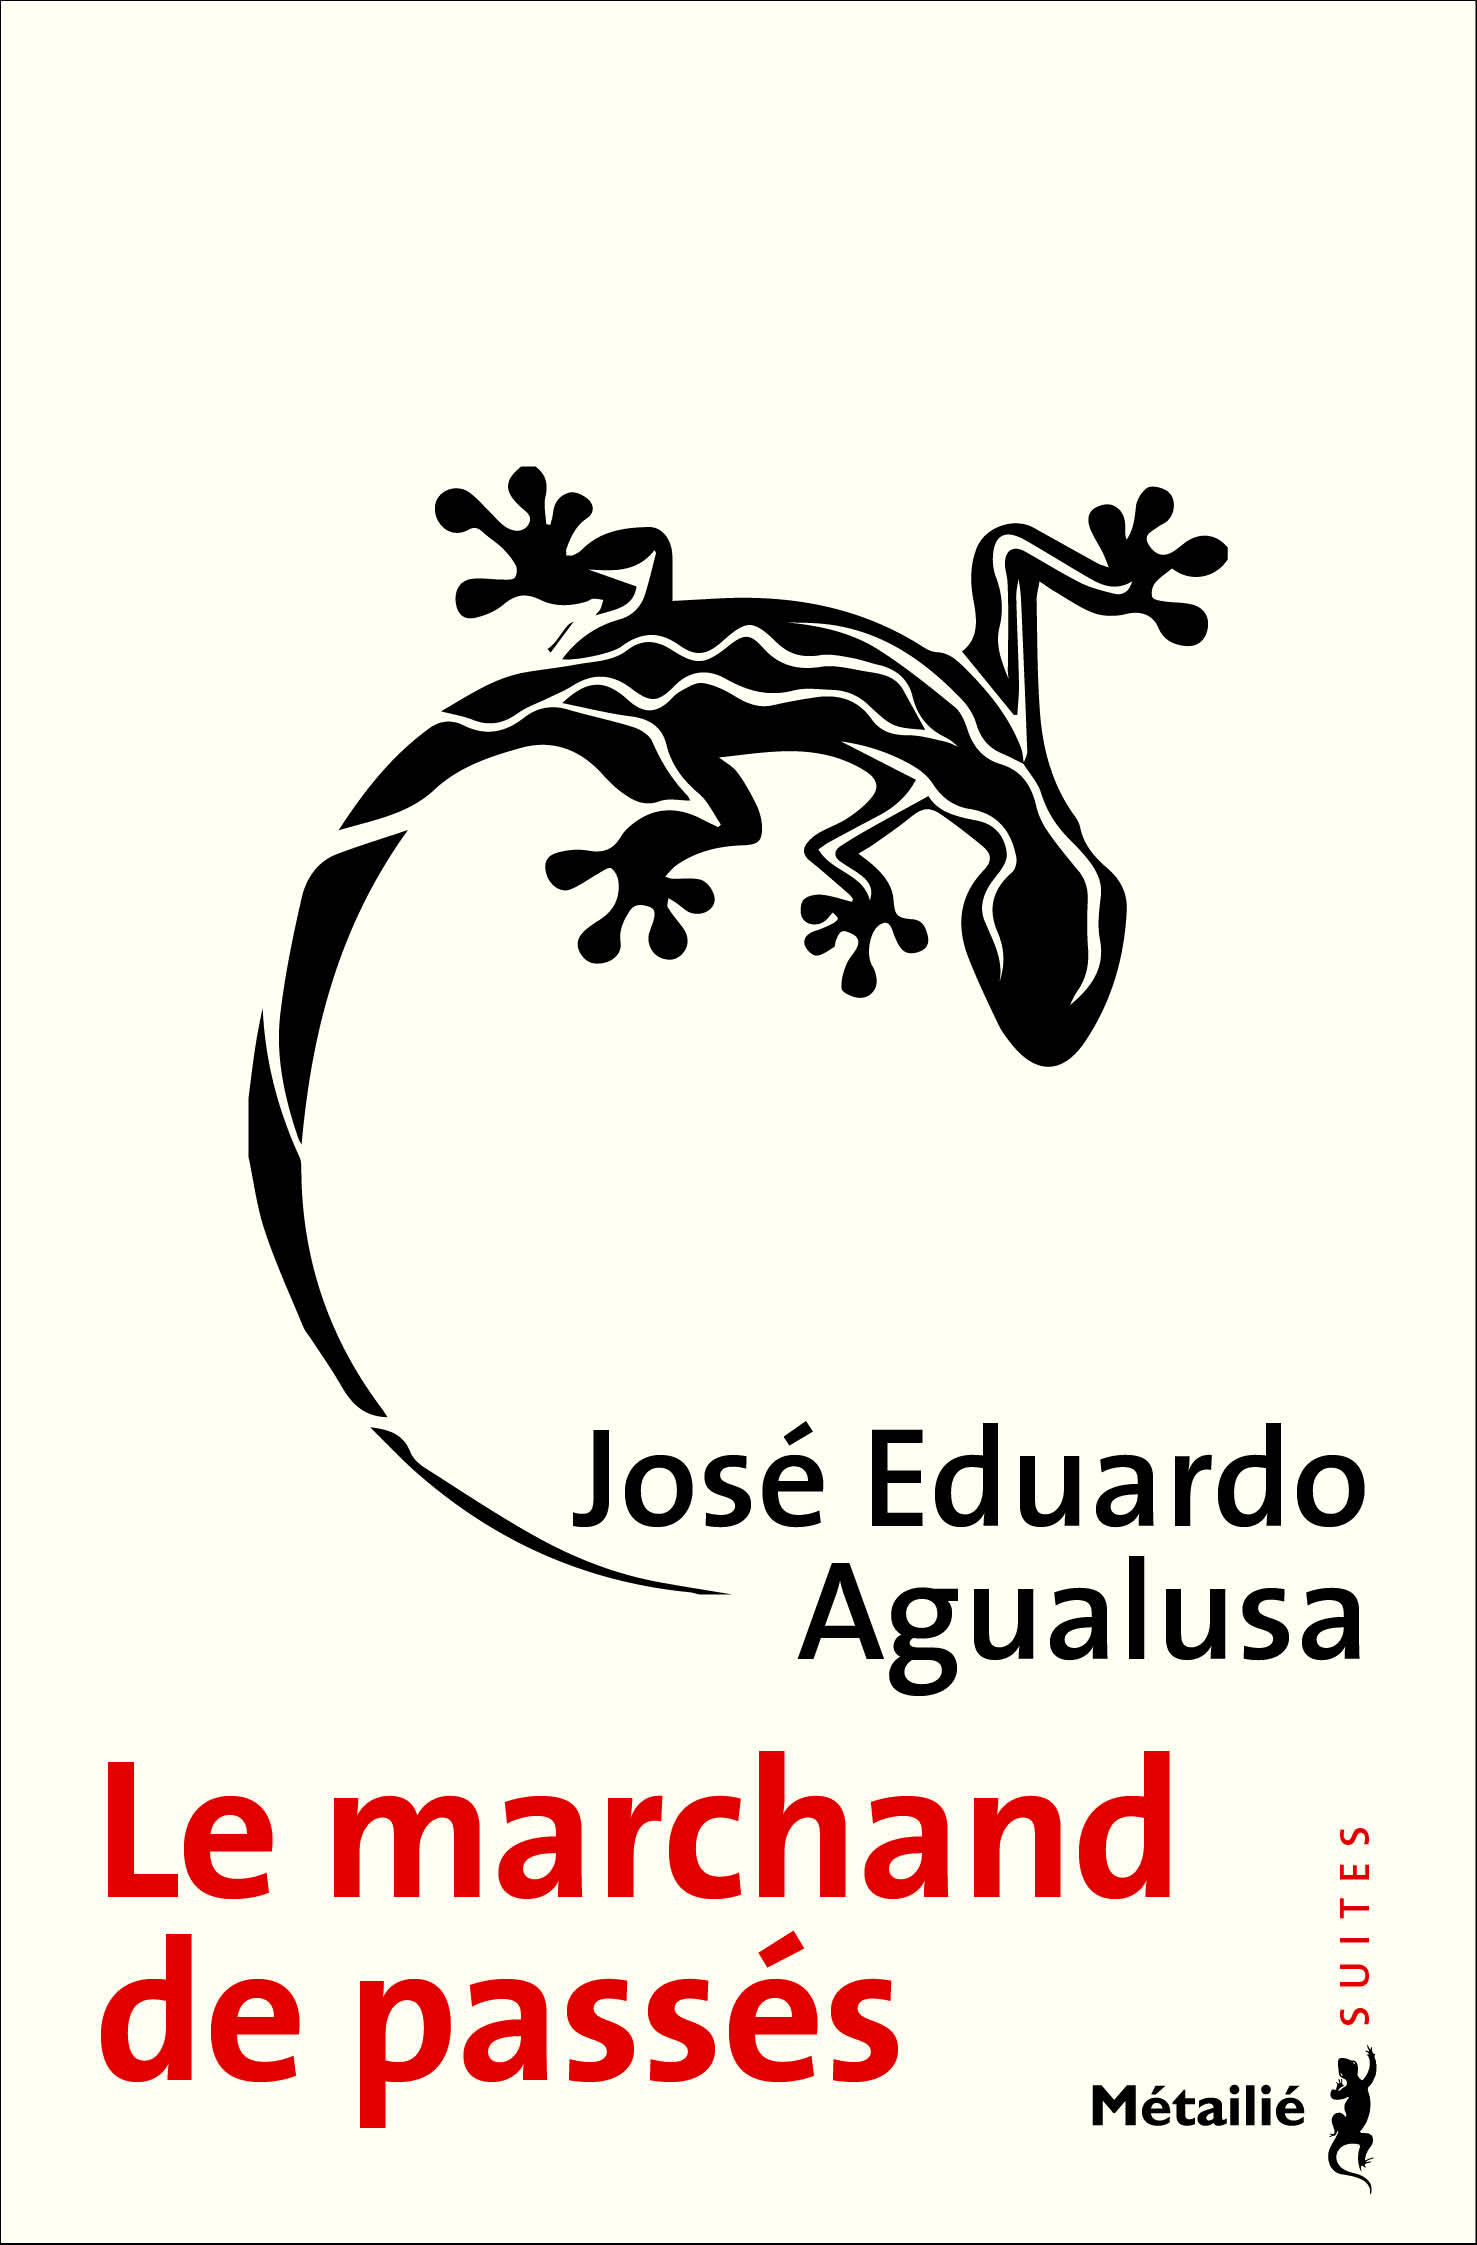 Le marchand de passés  José Eduardo Agualusa